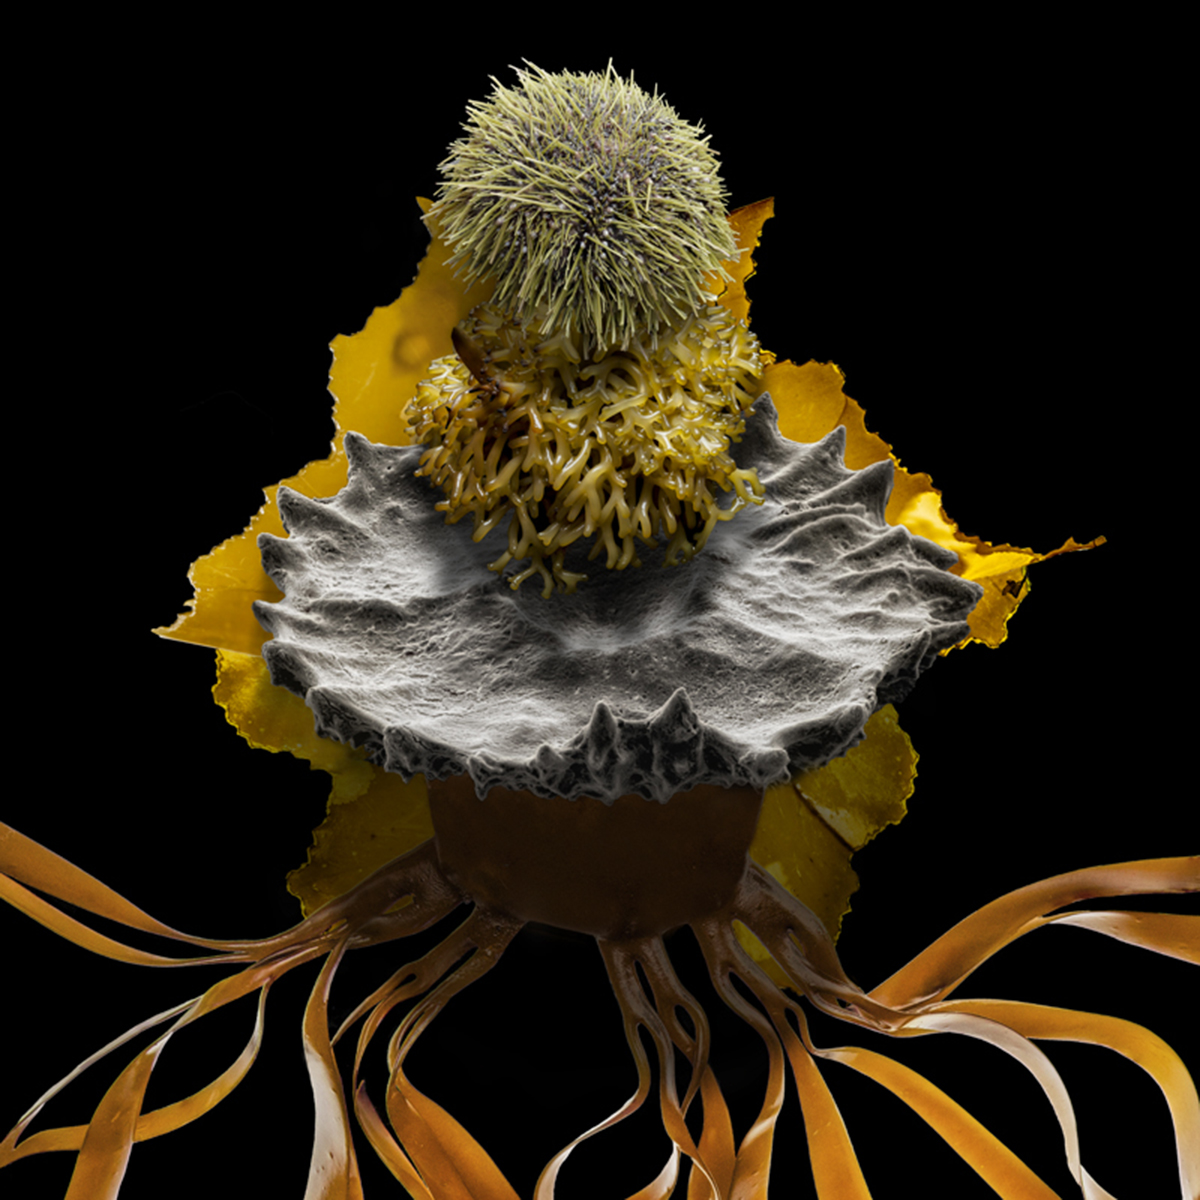 Urchin takes kelp